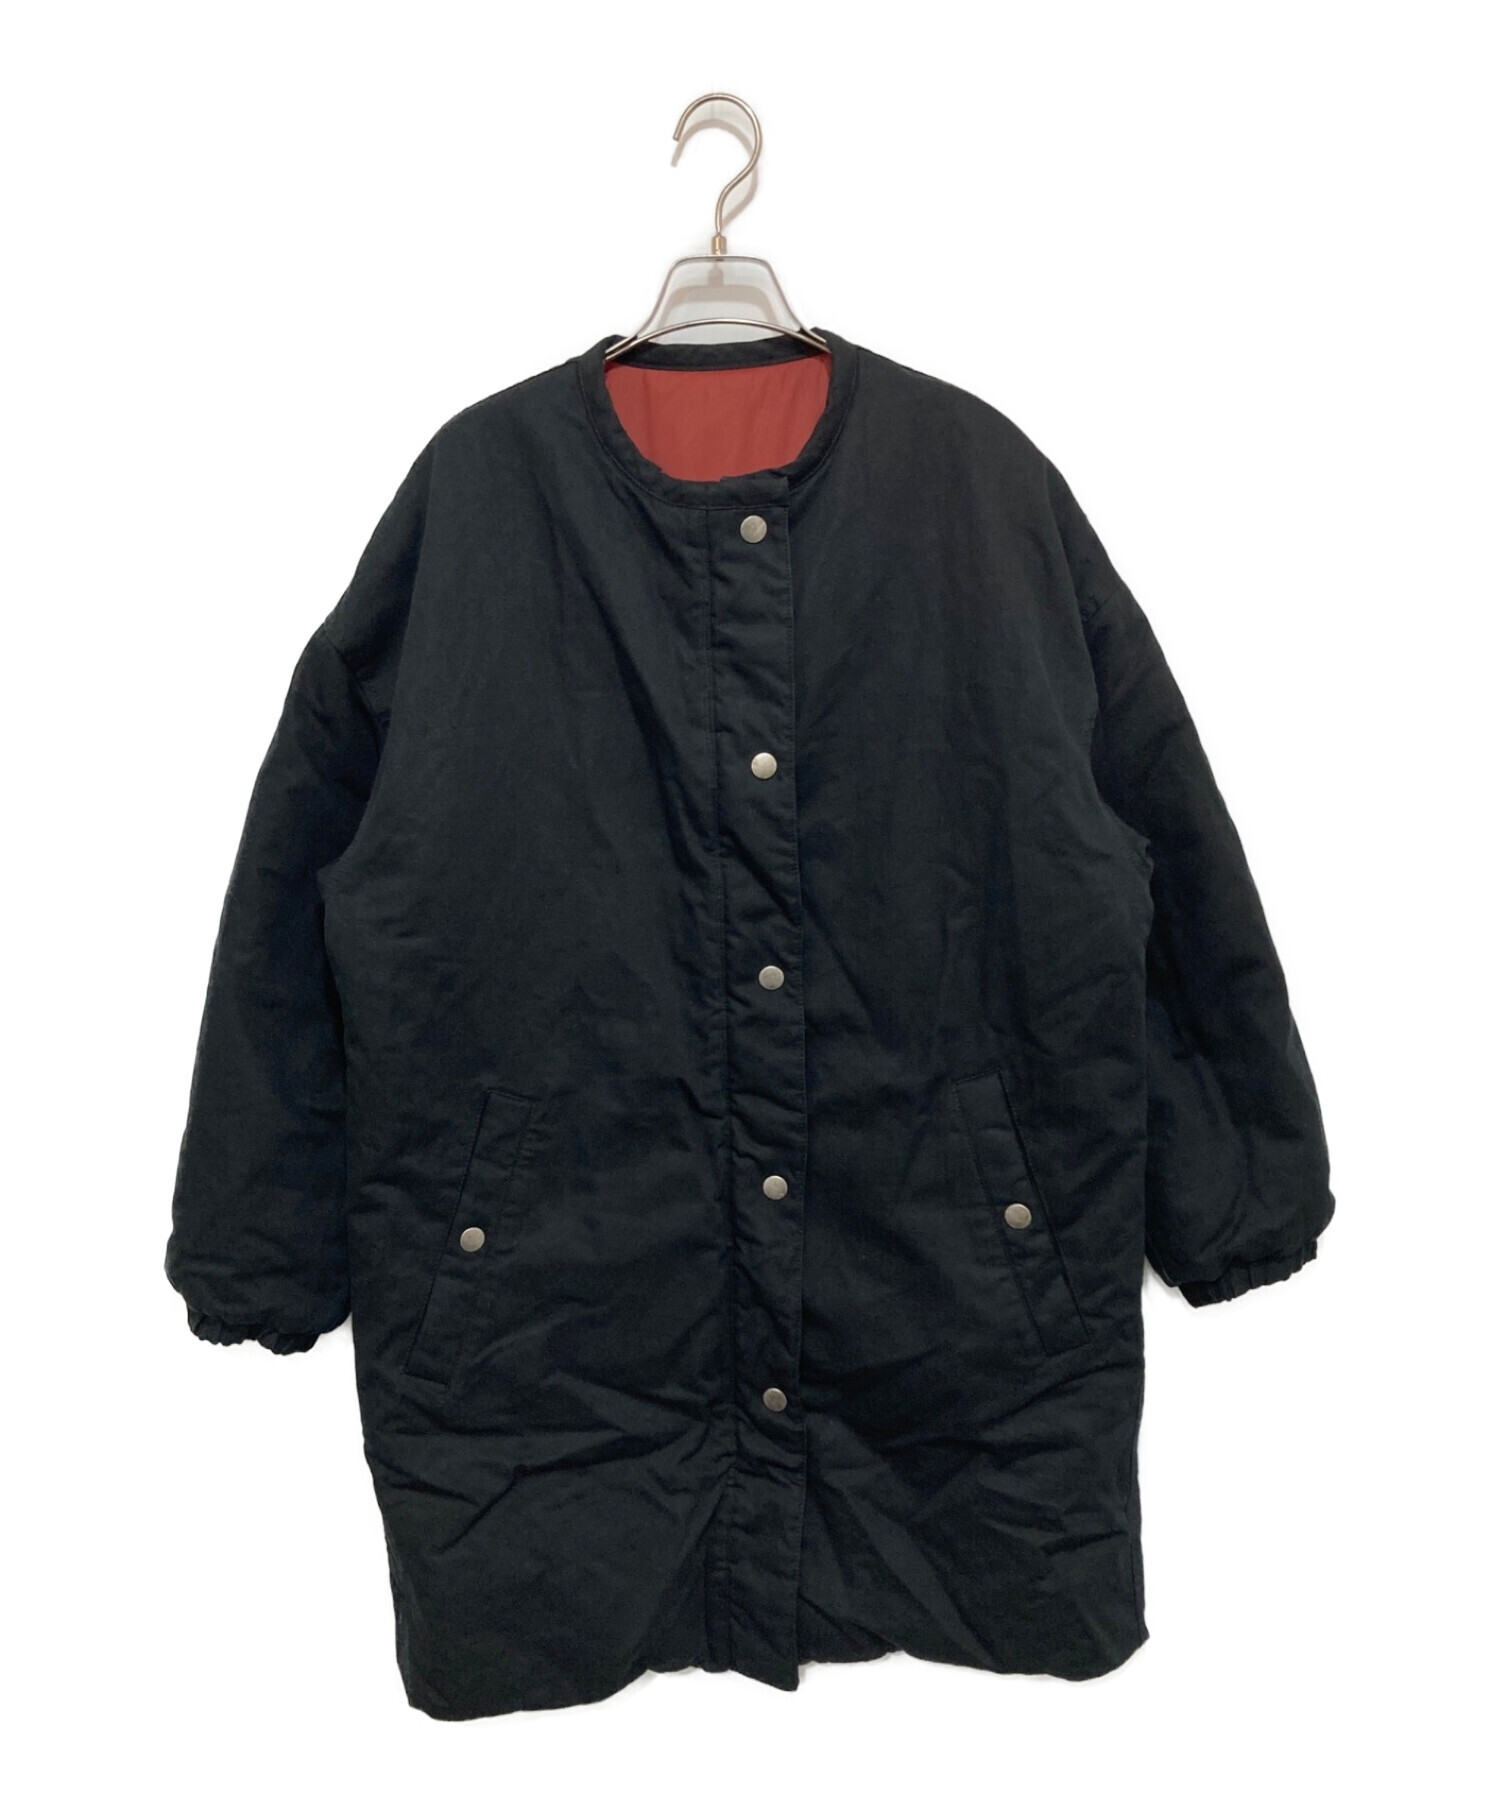 ISABEL MARANT ETOILE (イザベルマランエトワール) リバーシブル中綿コート ブラック サイズ:34